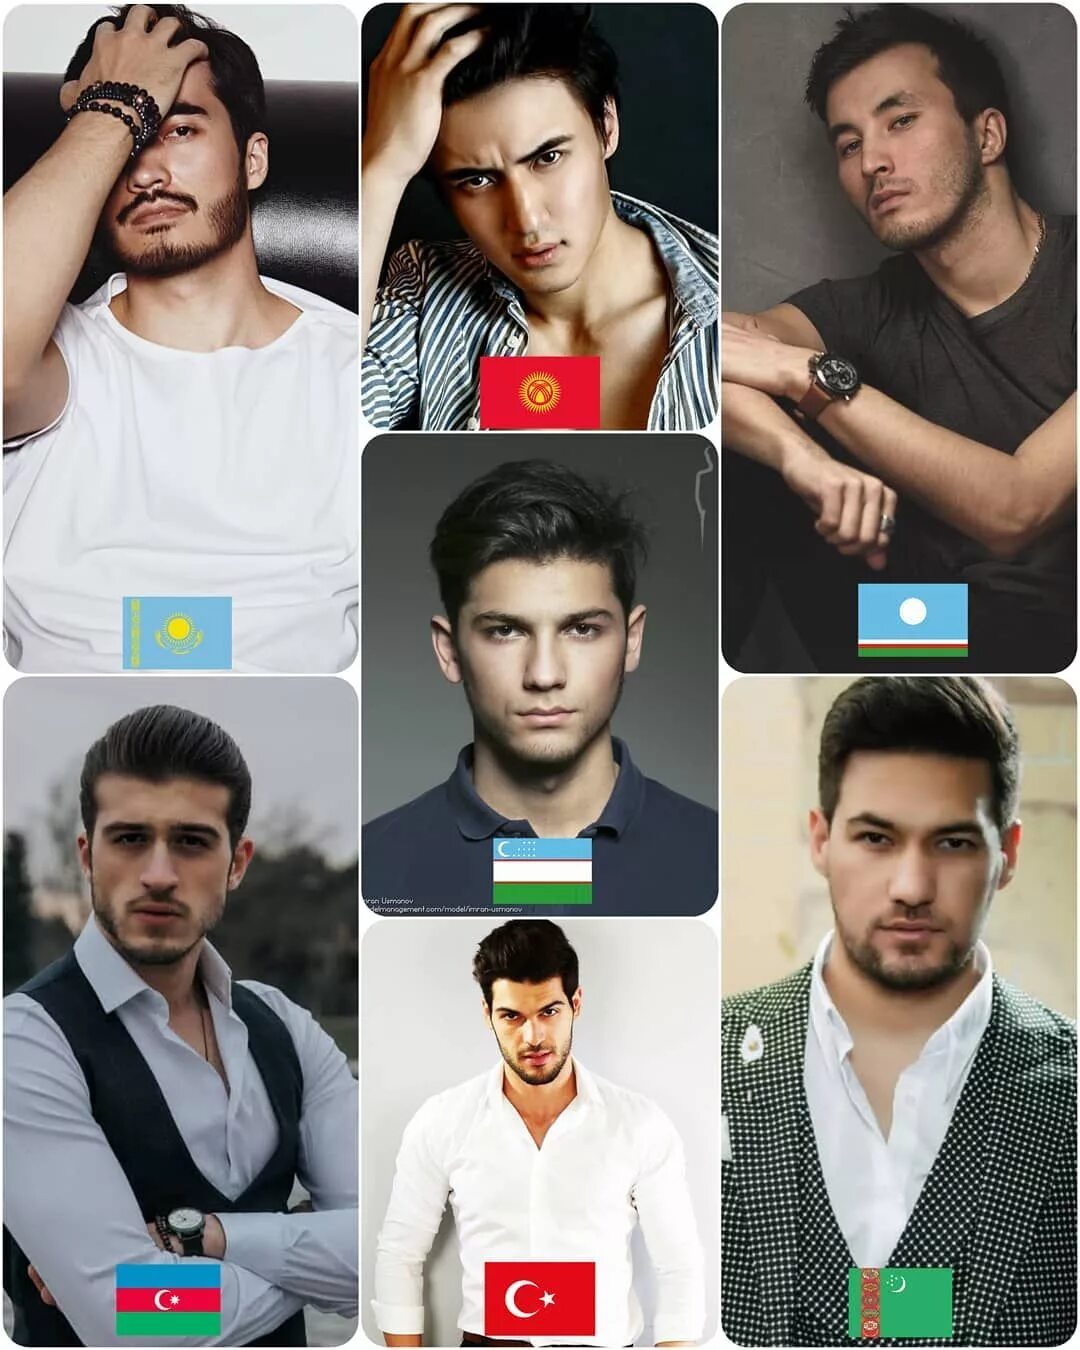 Таджикская внешность мужчин. Внешность турков. Туркмены мужчины. Узбеки внешность. Таджики характер мужчин